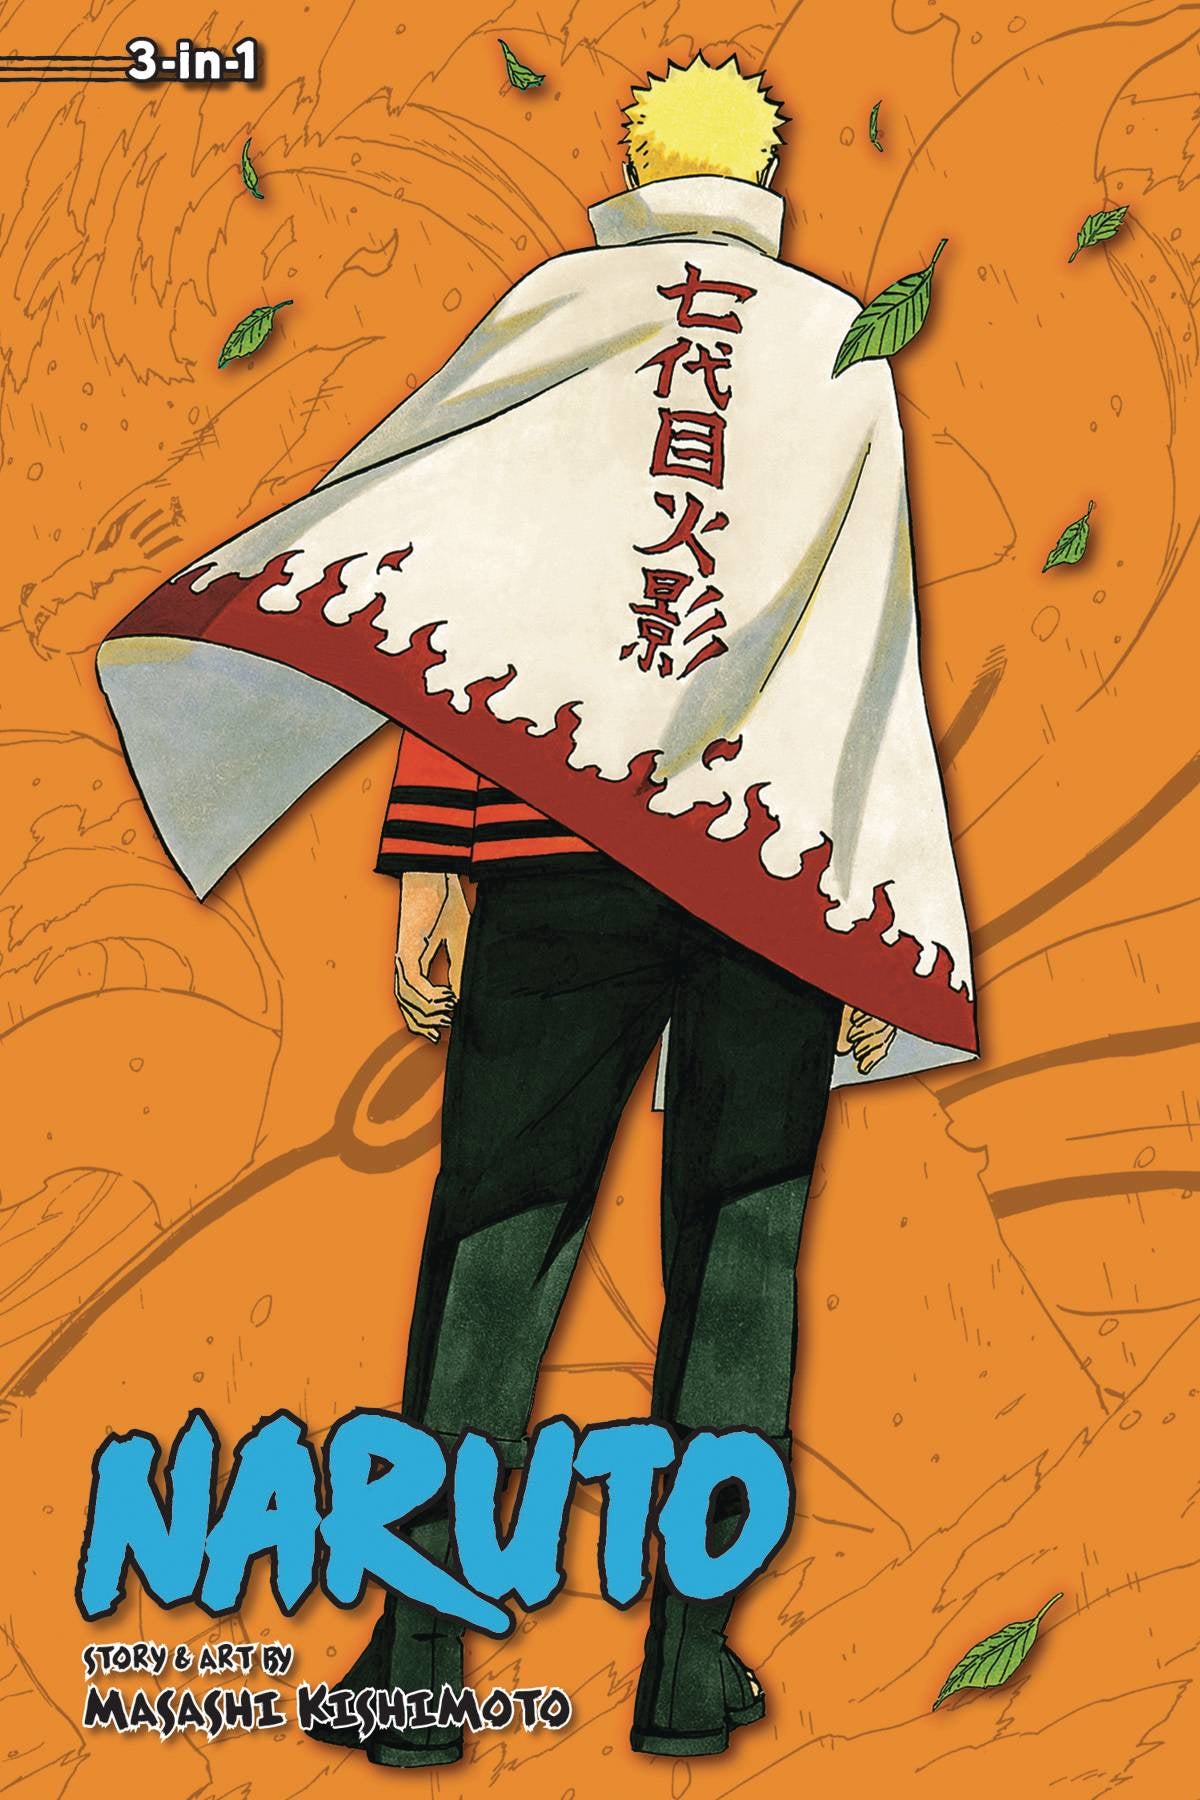 NARUTO VOLUME 24 (3 in 1 EDITION)